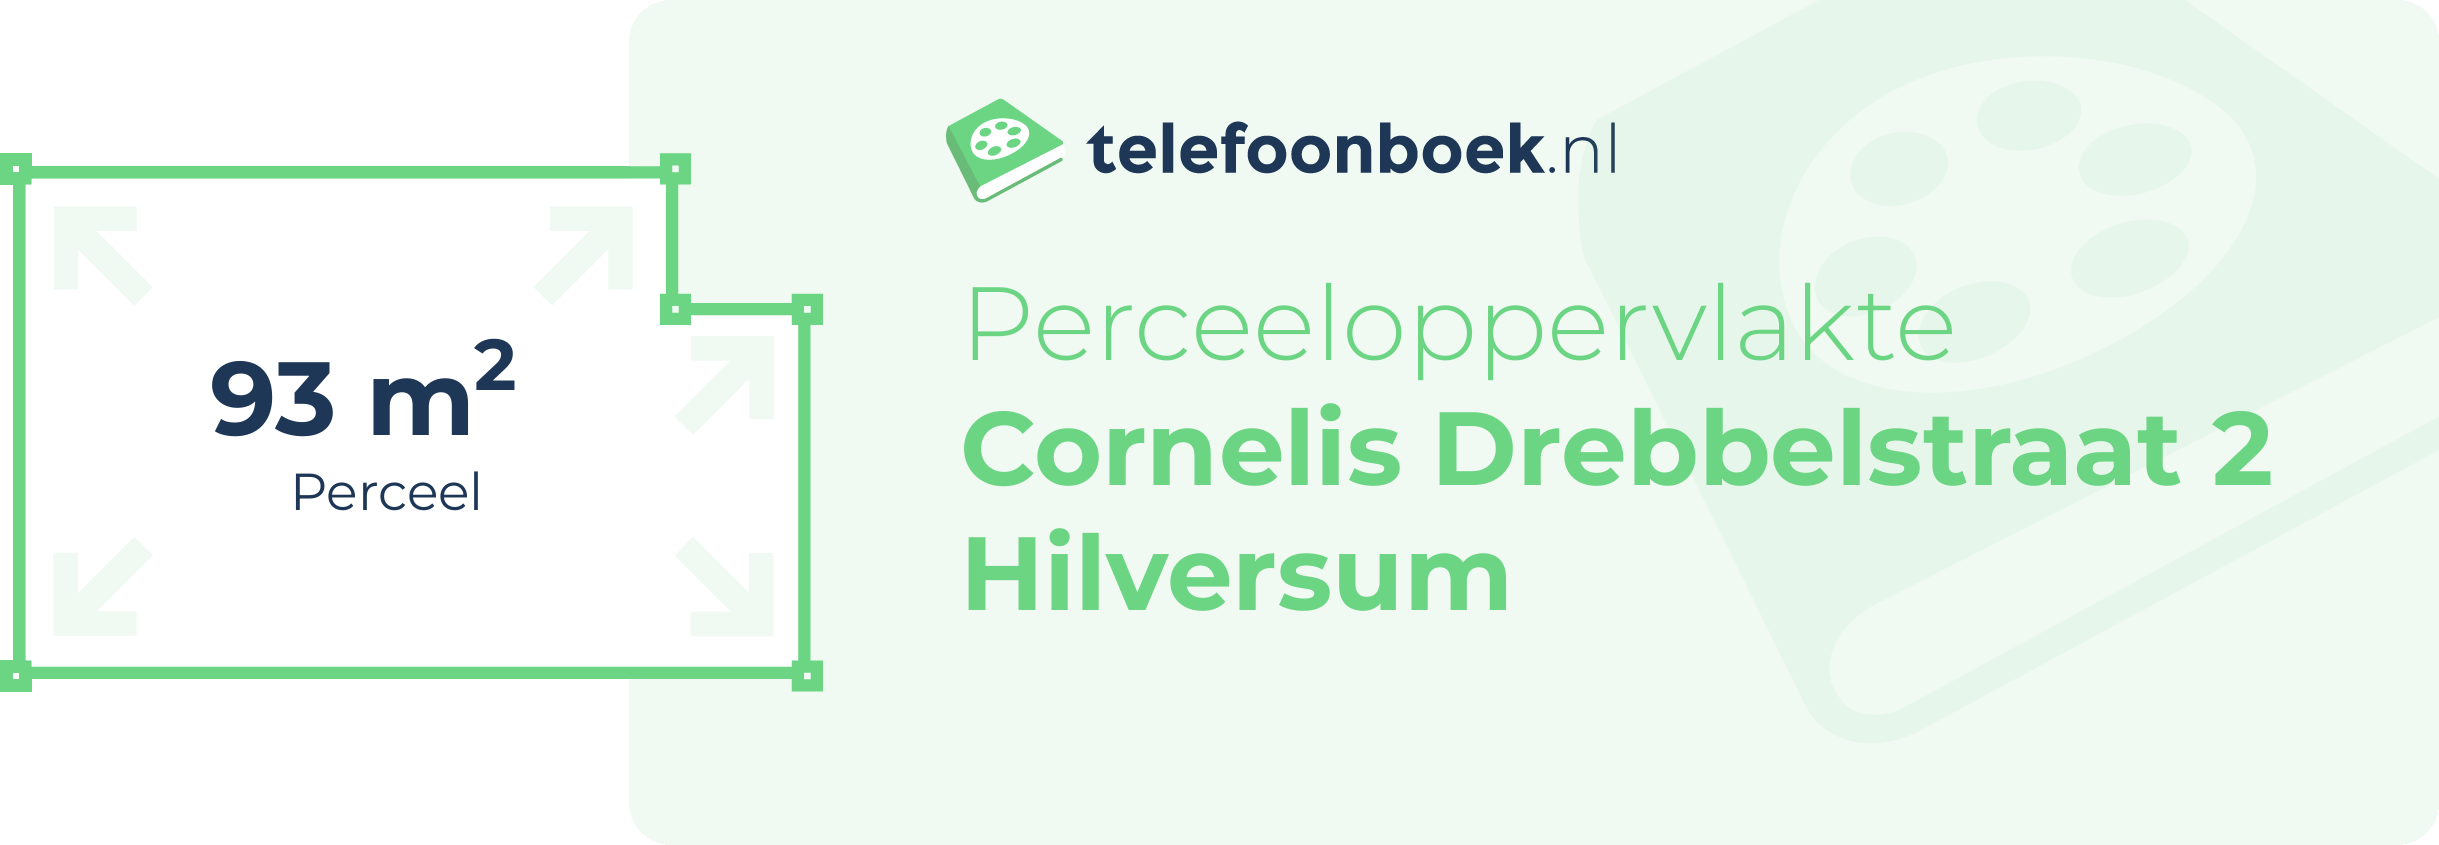 Perceeloppervlakte Cornelis Drebbelstraat 2 Hilversum